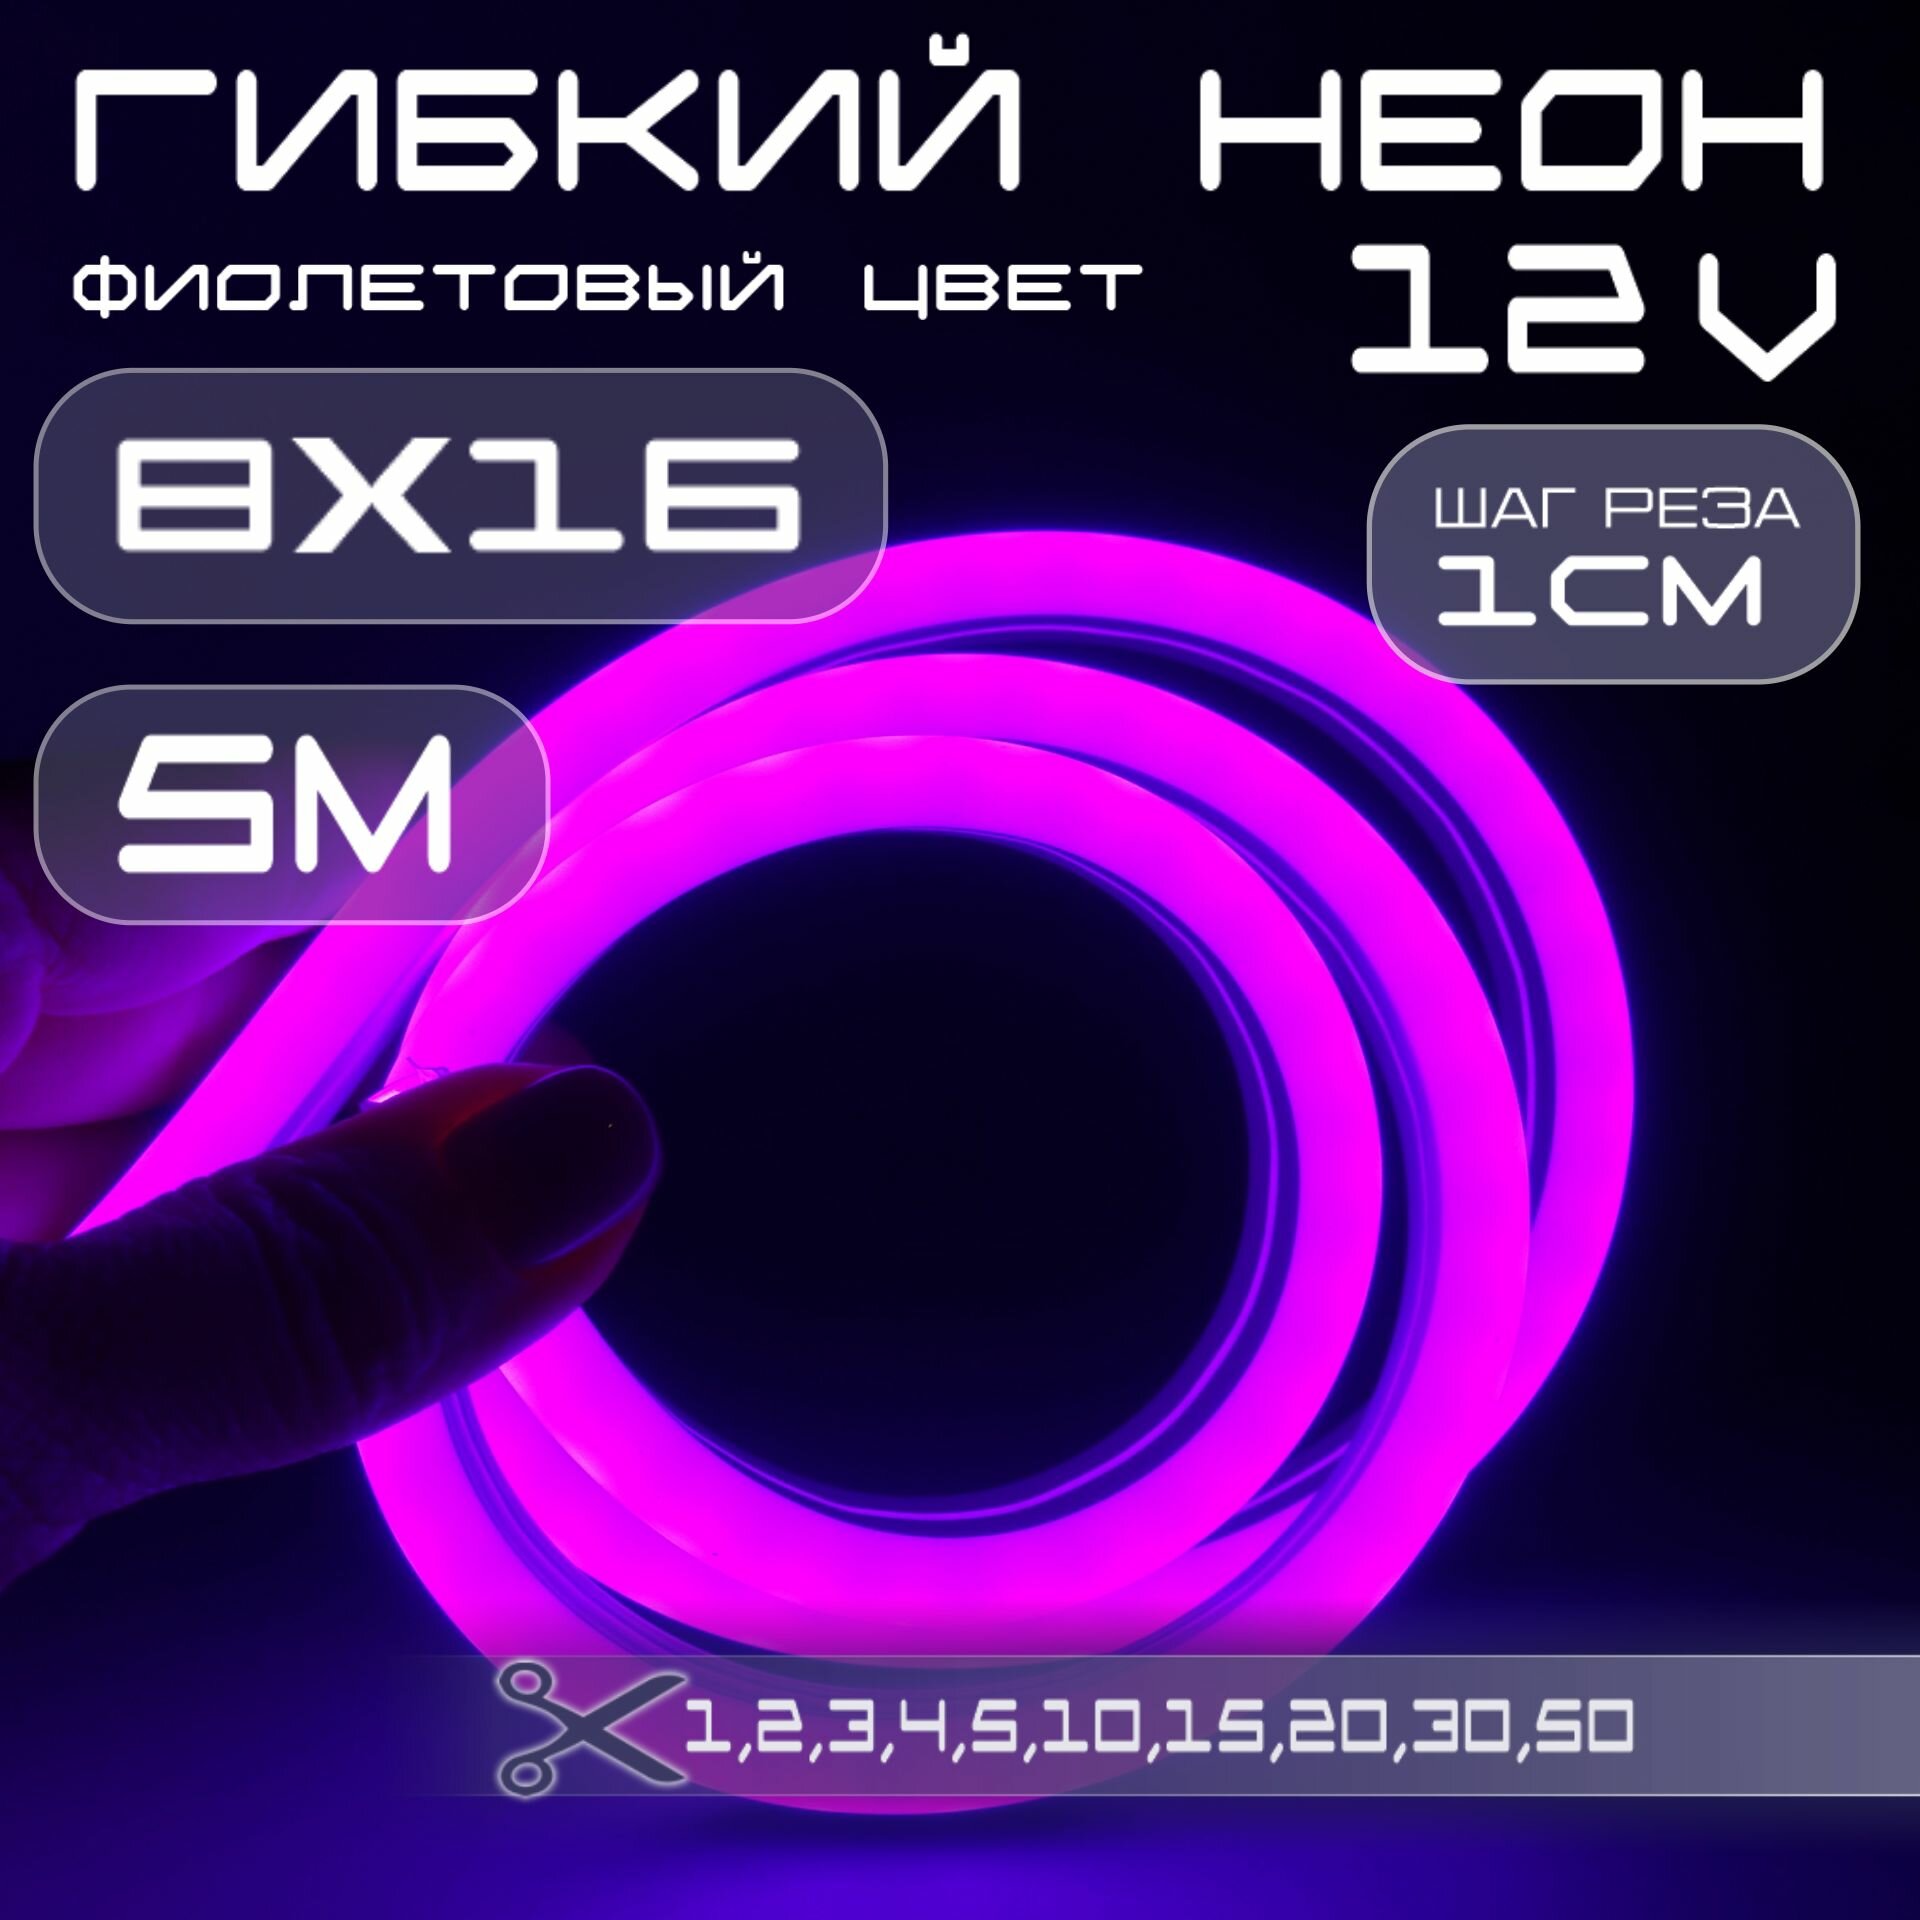 Гибкий неон 12V фиолетовый 8х16, 10W, 110 Led, IP67 шаг реза 1 см, 5 метров